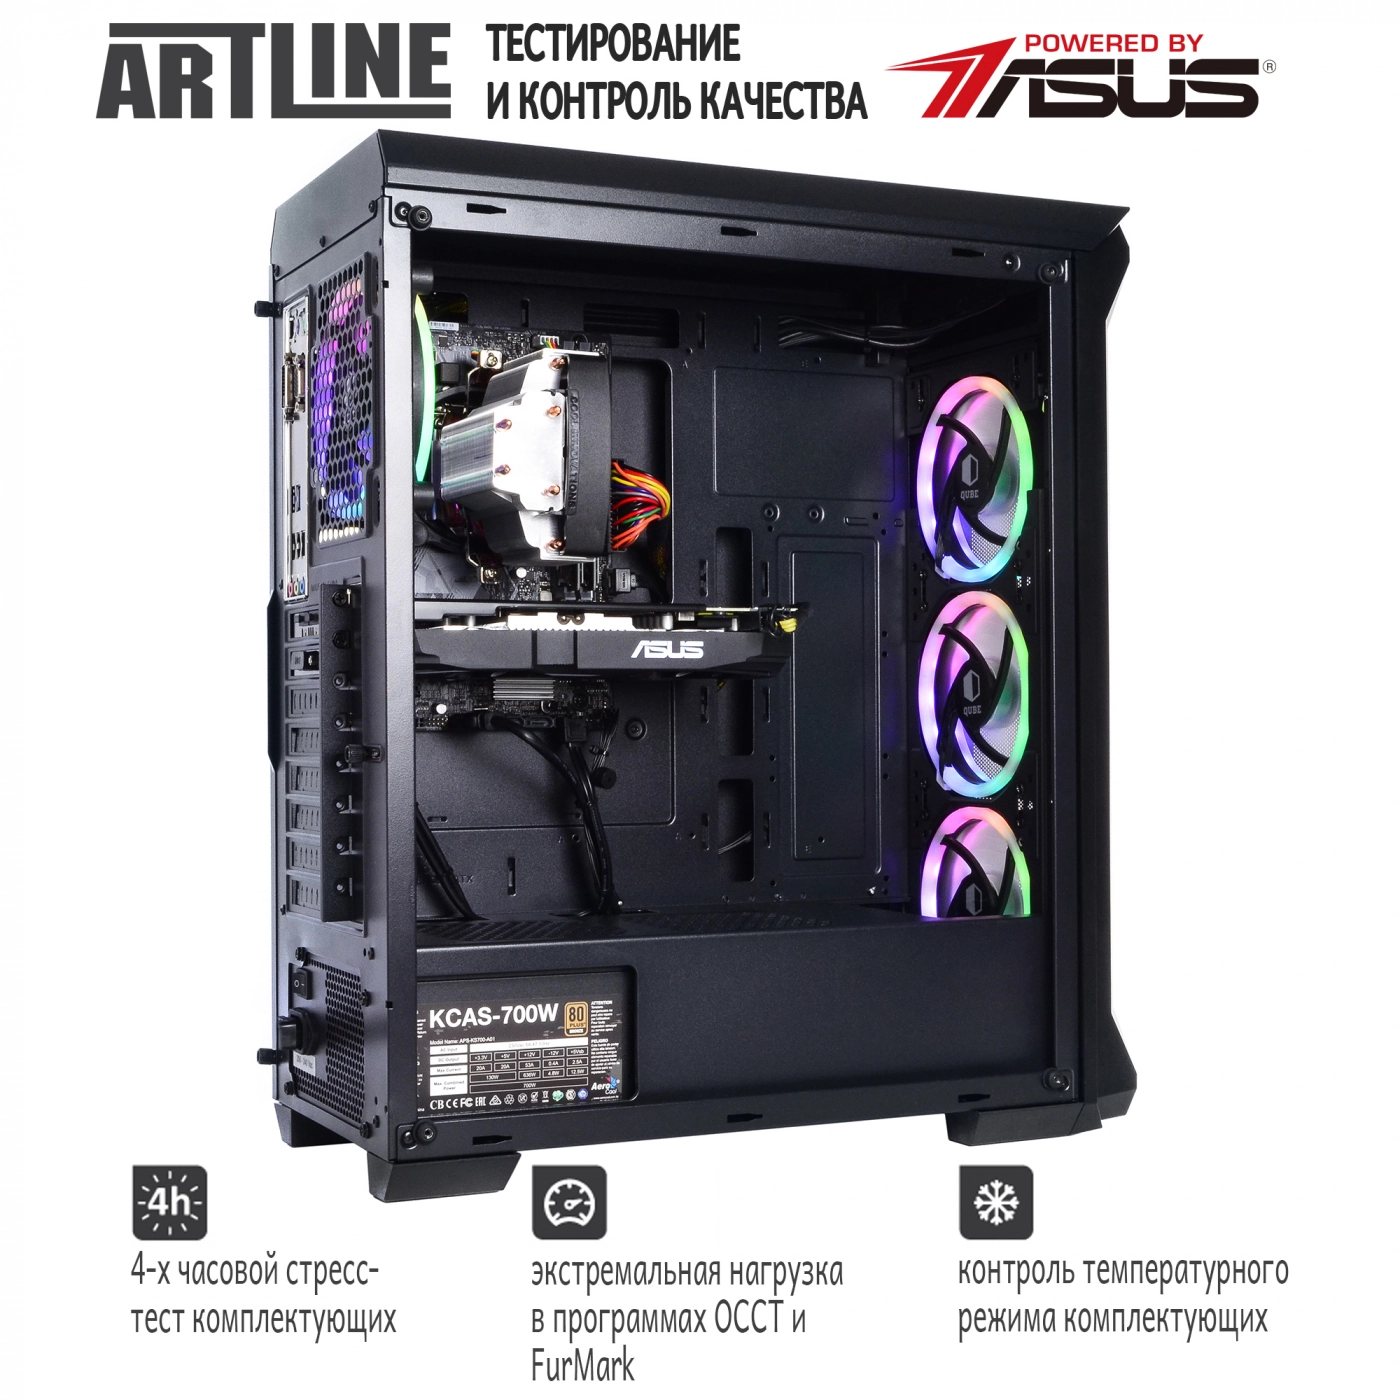 Купить Компьютер ARTLINE Gaming X75v14 - фото 6